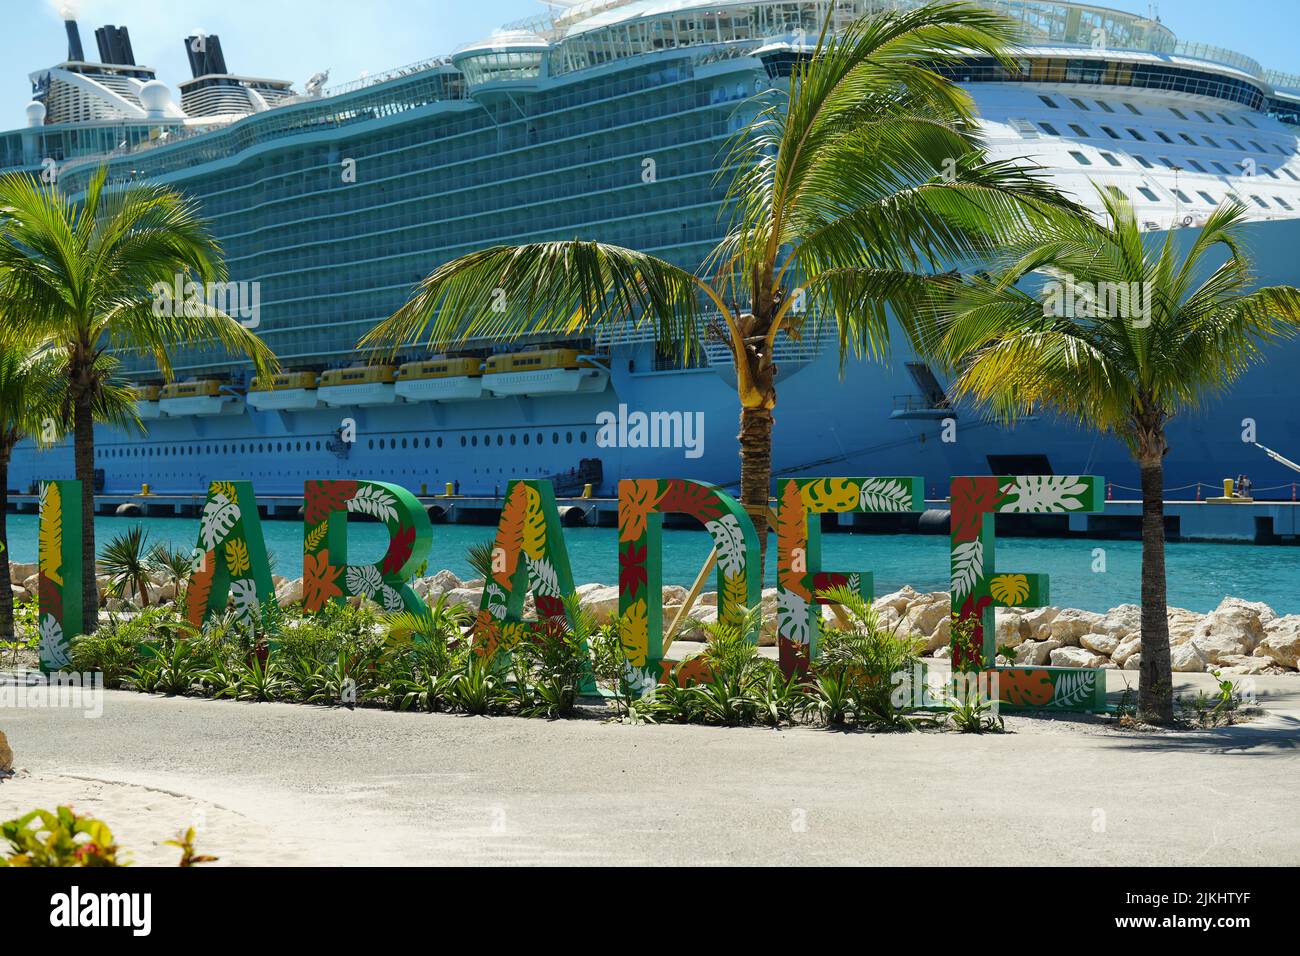 Eine selektive Fokusaufnahme des Strandschildes Labadee mit dem Schiff Allure of the Seas im Hintergrund Stockfoto